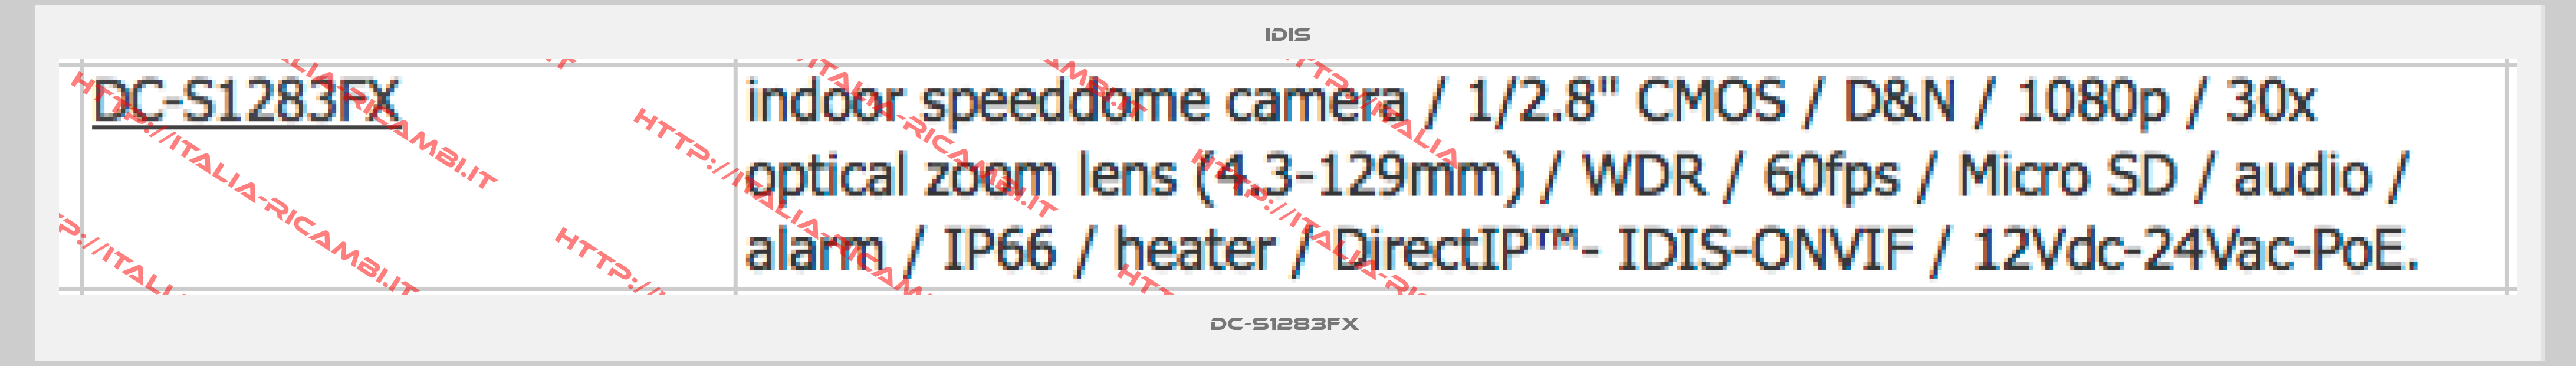 IDIS-DC-S1283FX 